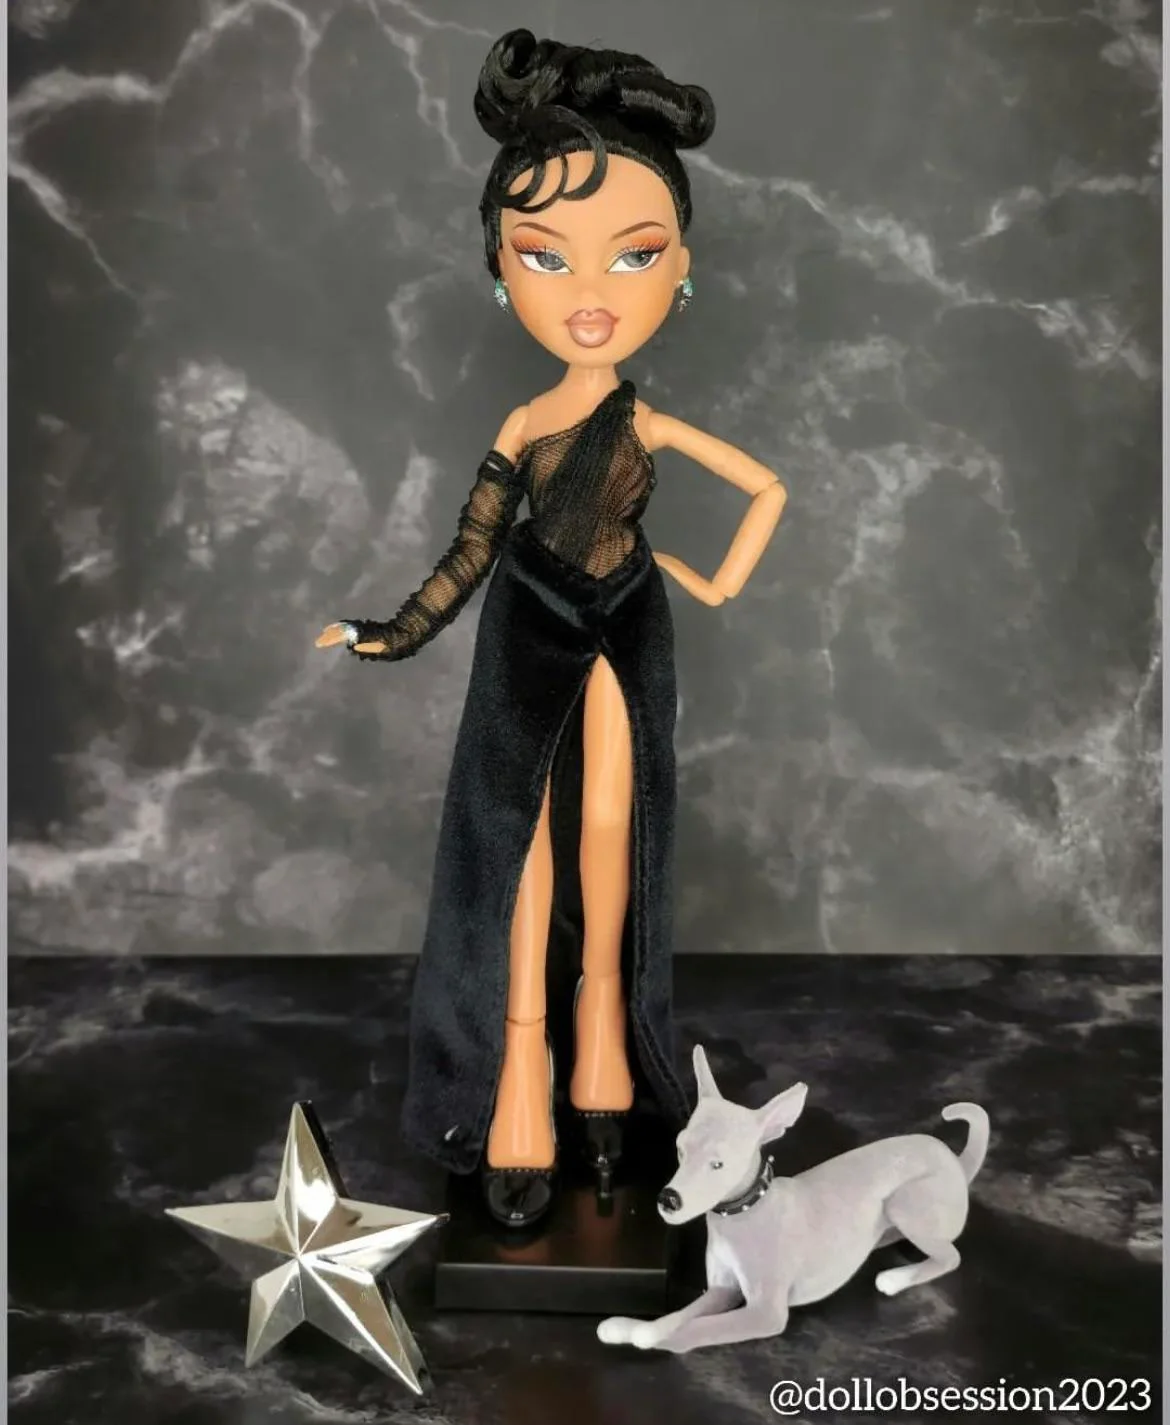 Bratz x Kylie Jenner Celebrity Day Look Fashion Doll with Accessories, BIG  W